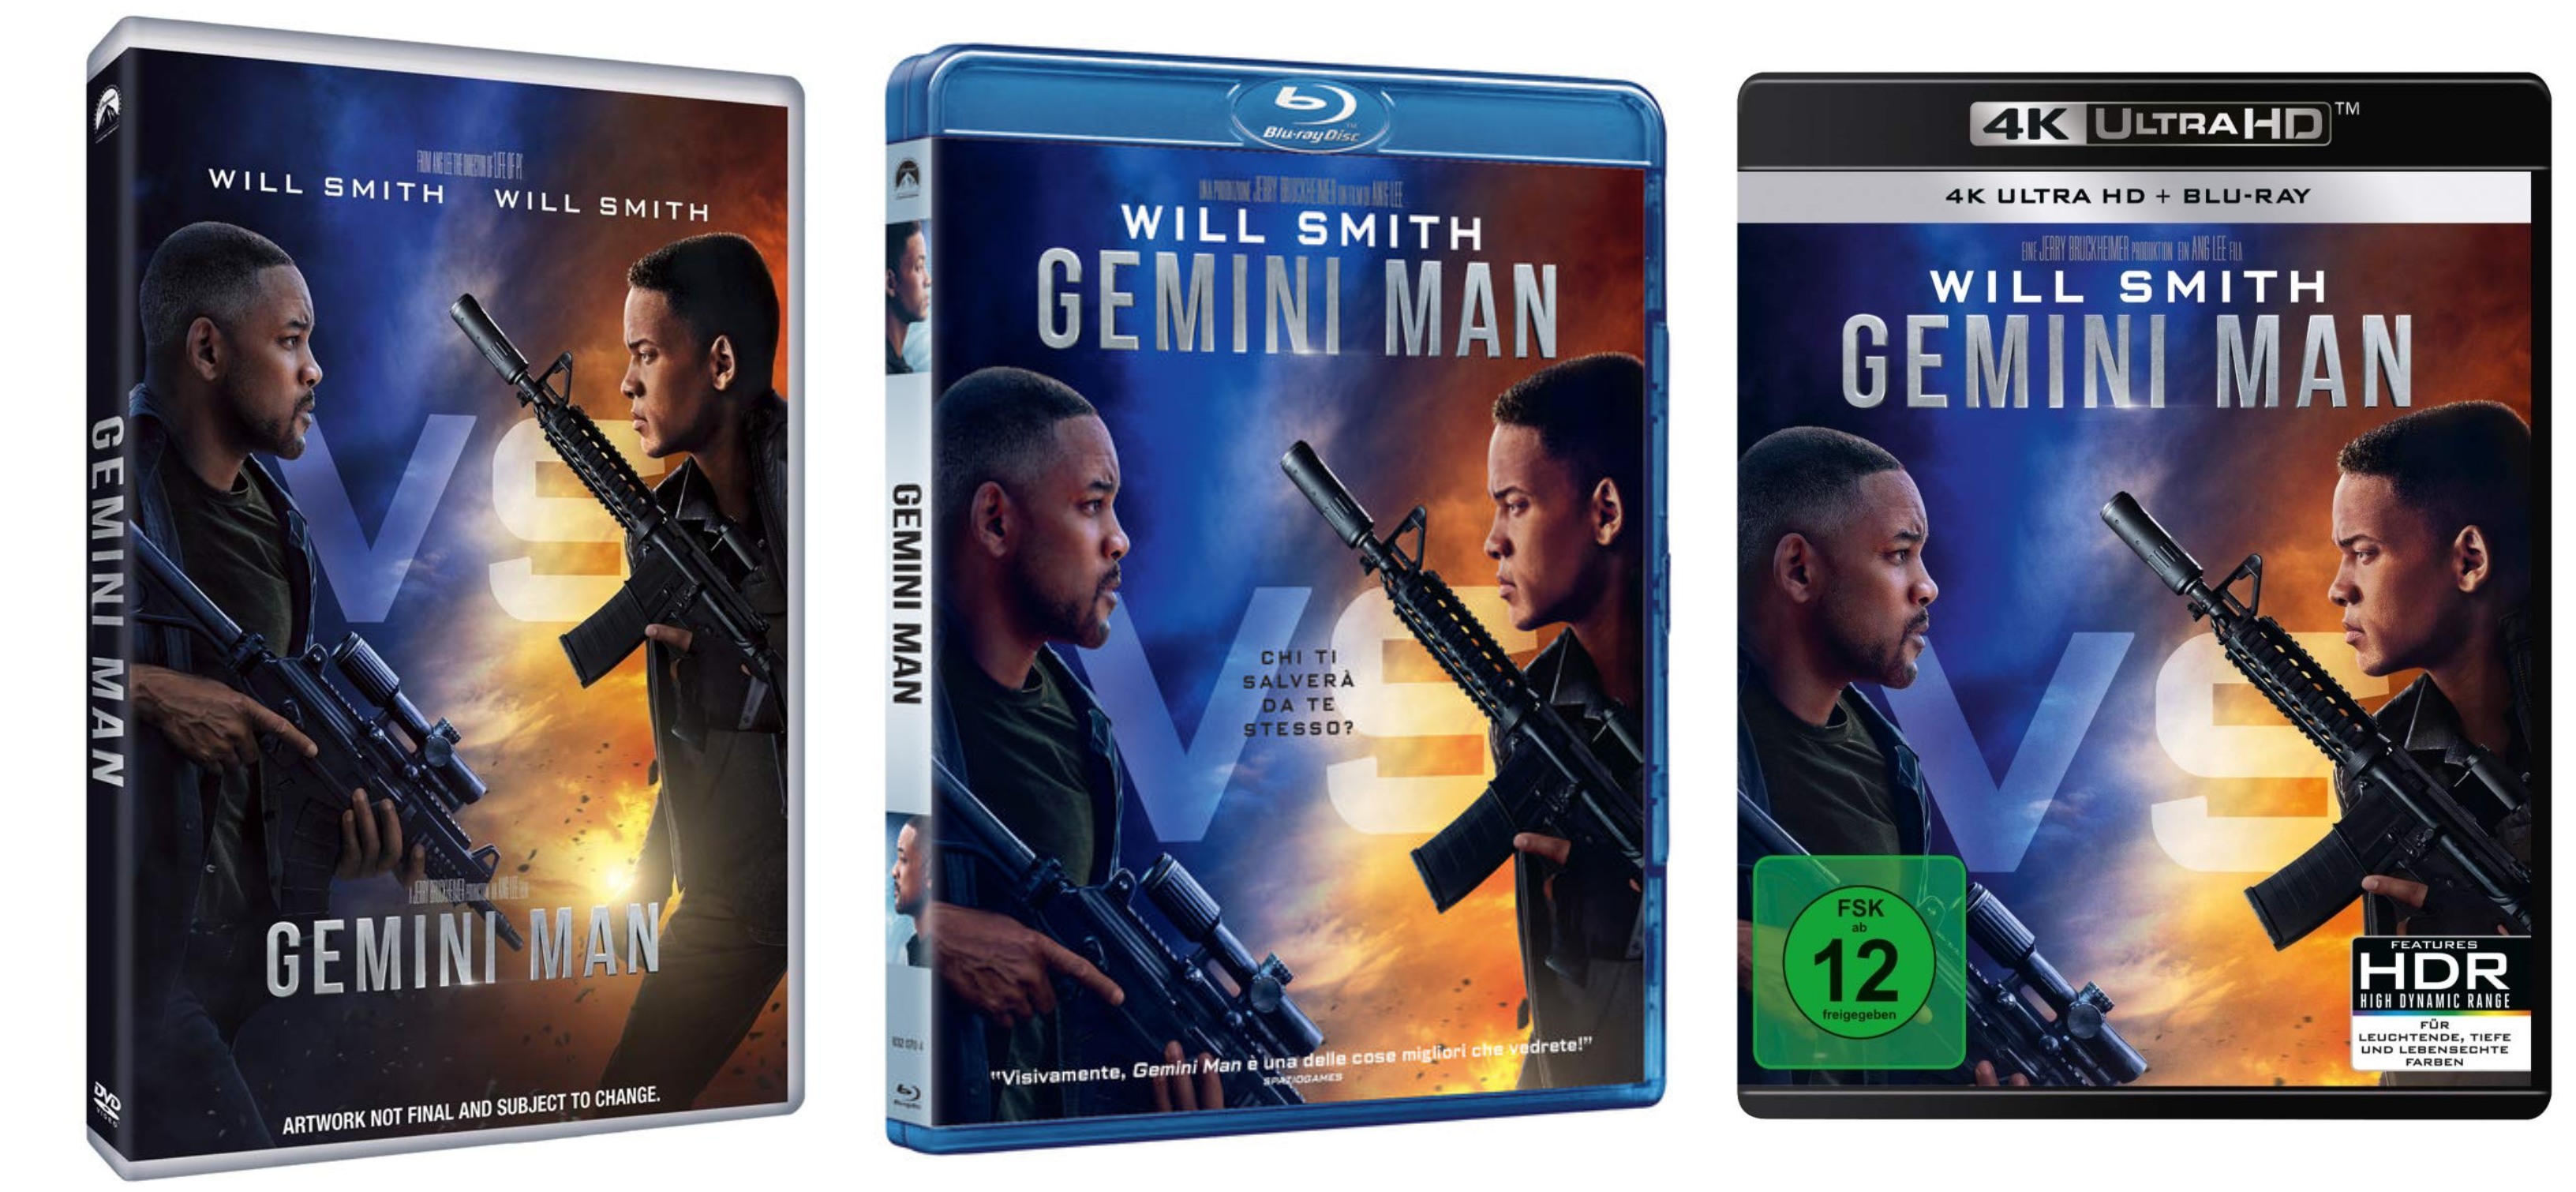 “Gemini Man” il film con Will Smith in homevideo grazie a Universal Pictures